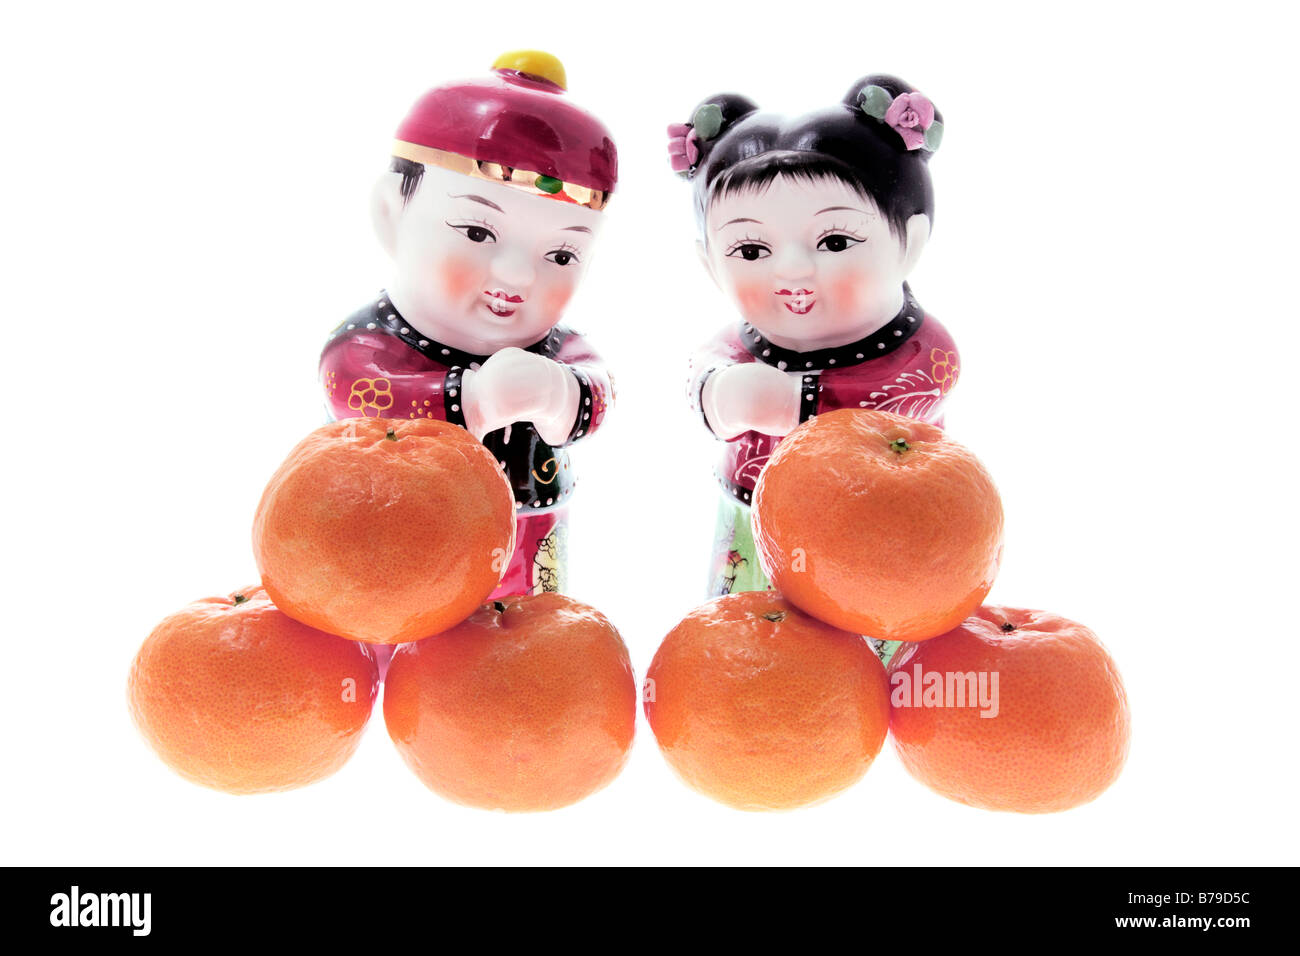 Chinese Figurines and Mandarins Stock Photo